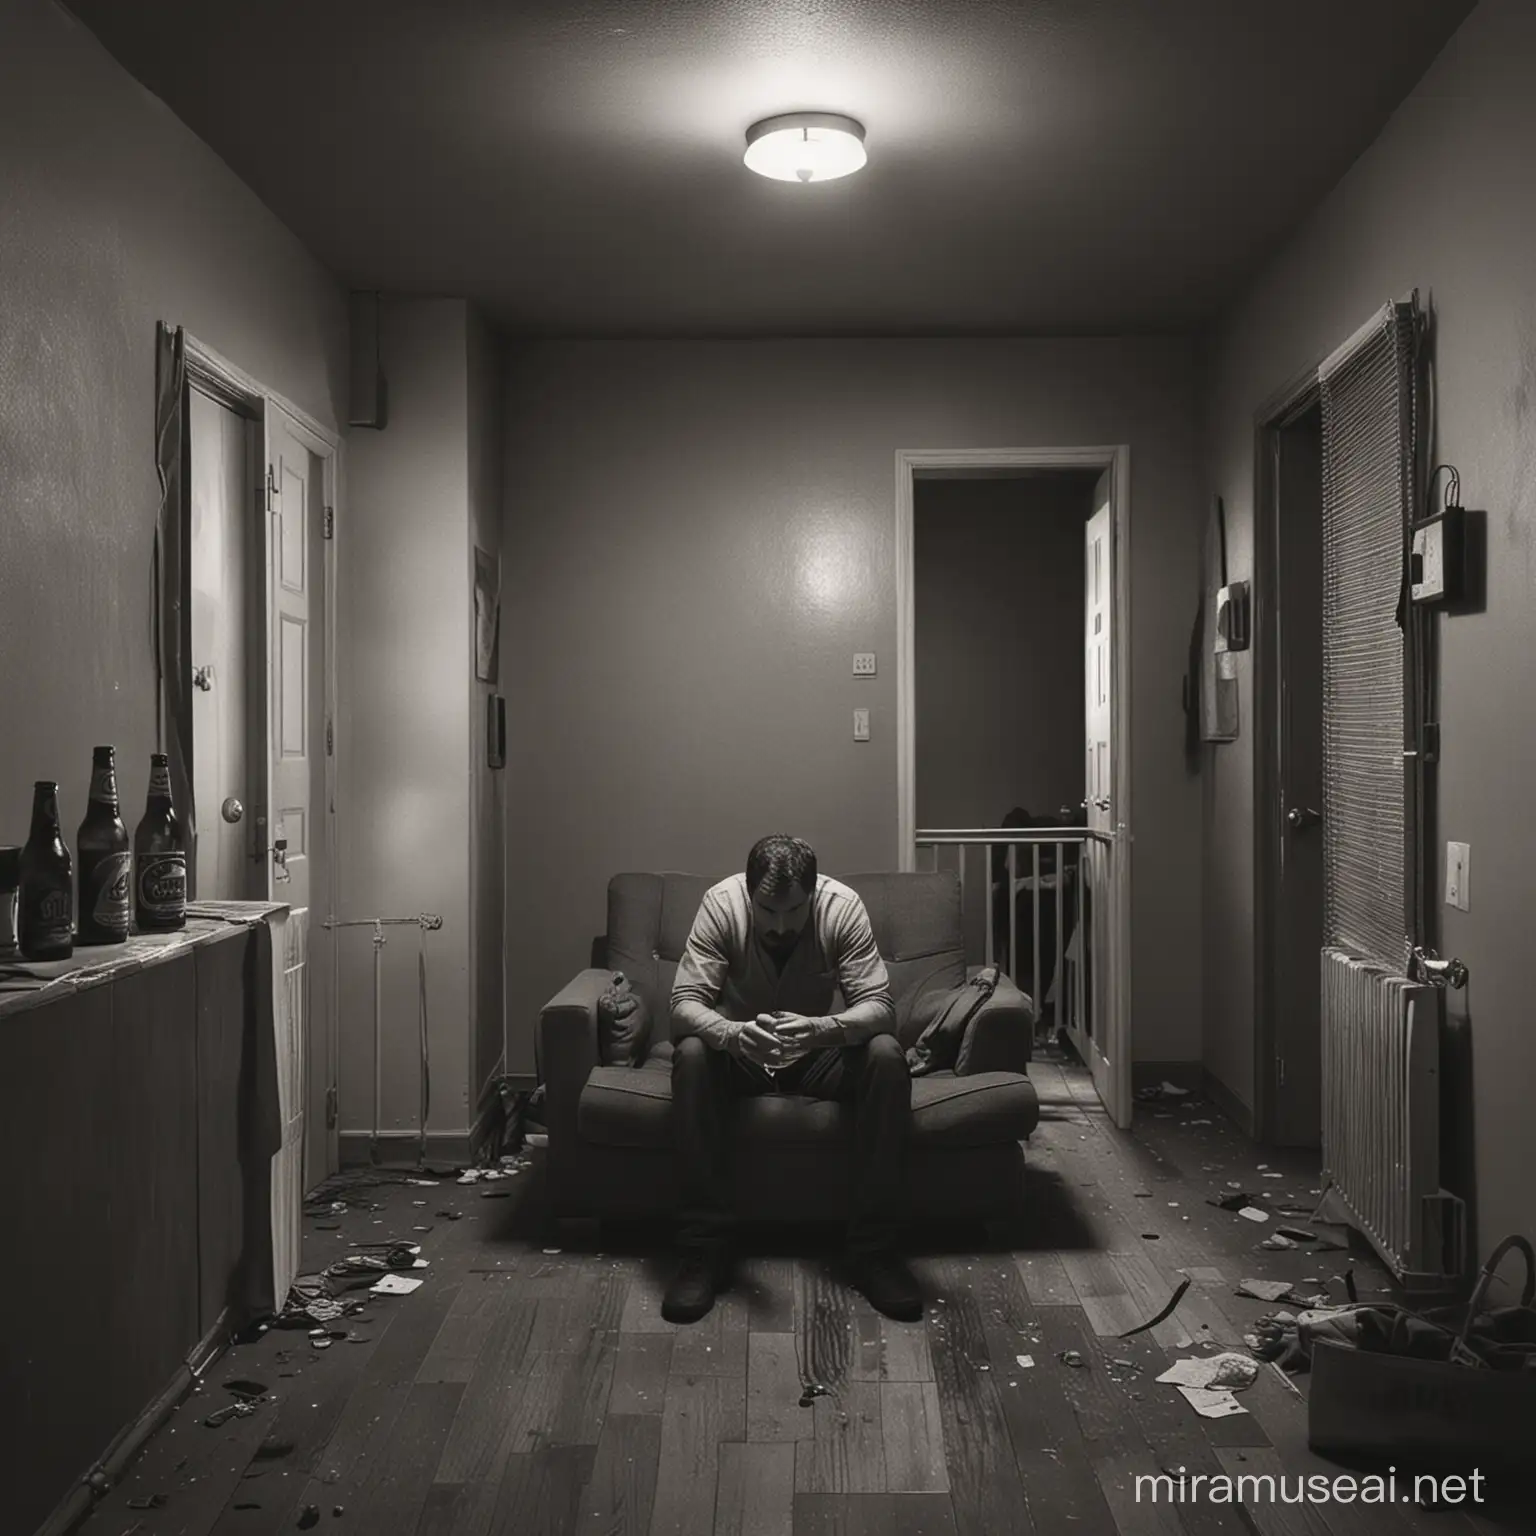 kan du lave et billede, hvor en mand sidder i en grim lejlighed alene med en øl i hånden, men hvor han har gjordet klar til en anden, men han kom aldrig, så han er derfor lidt ked af det?
